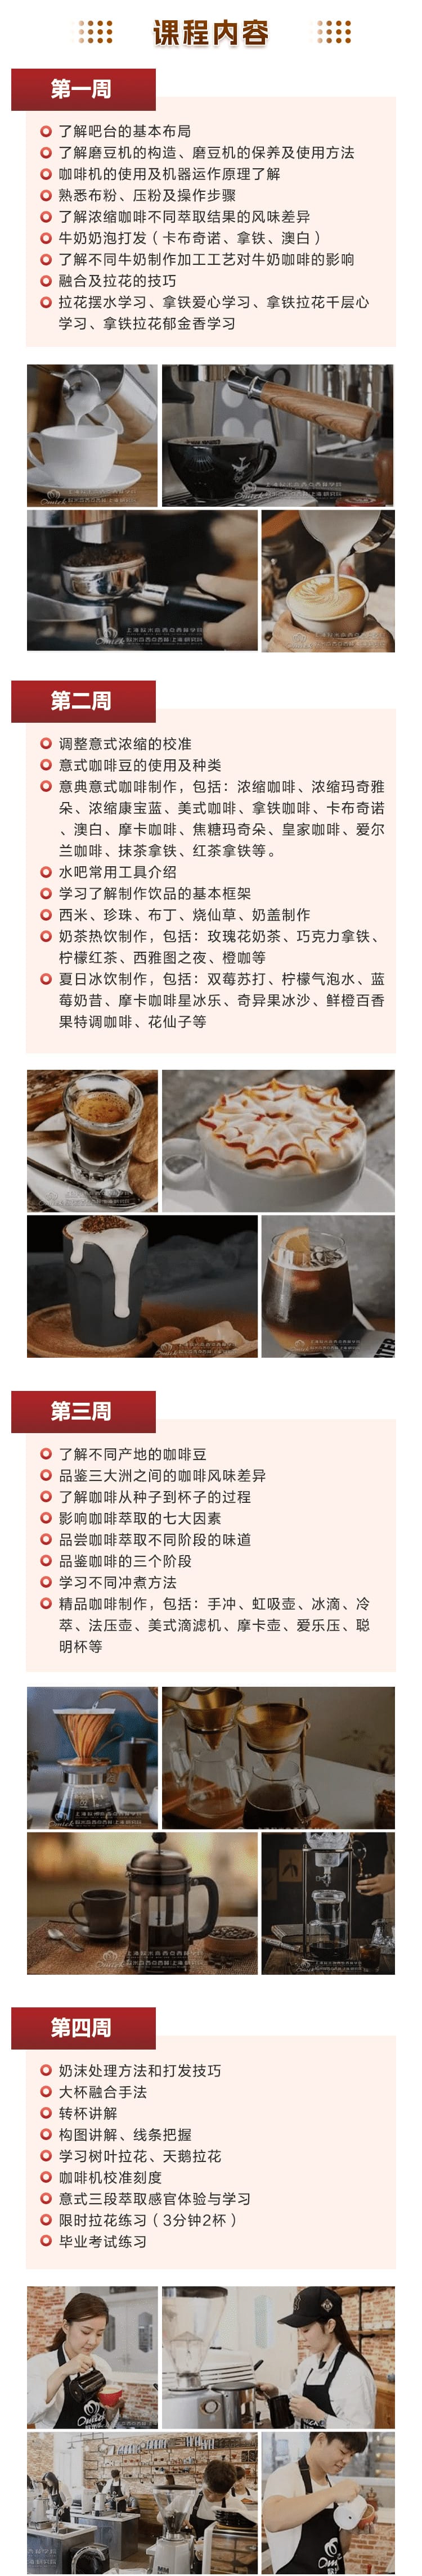 上海咖啡饮品专业课程